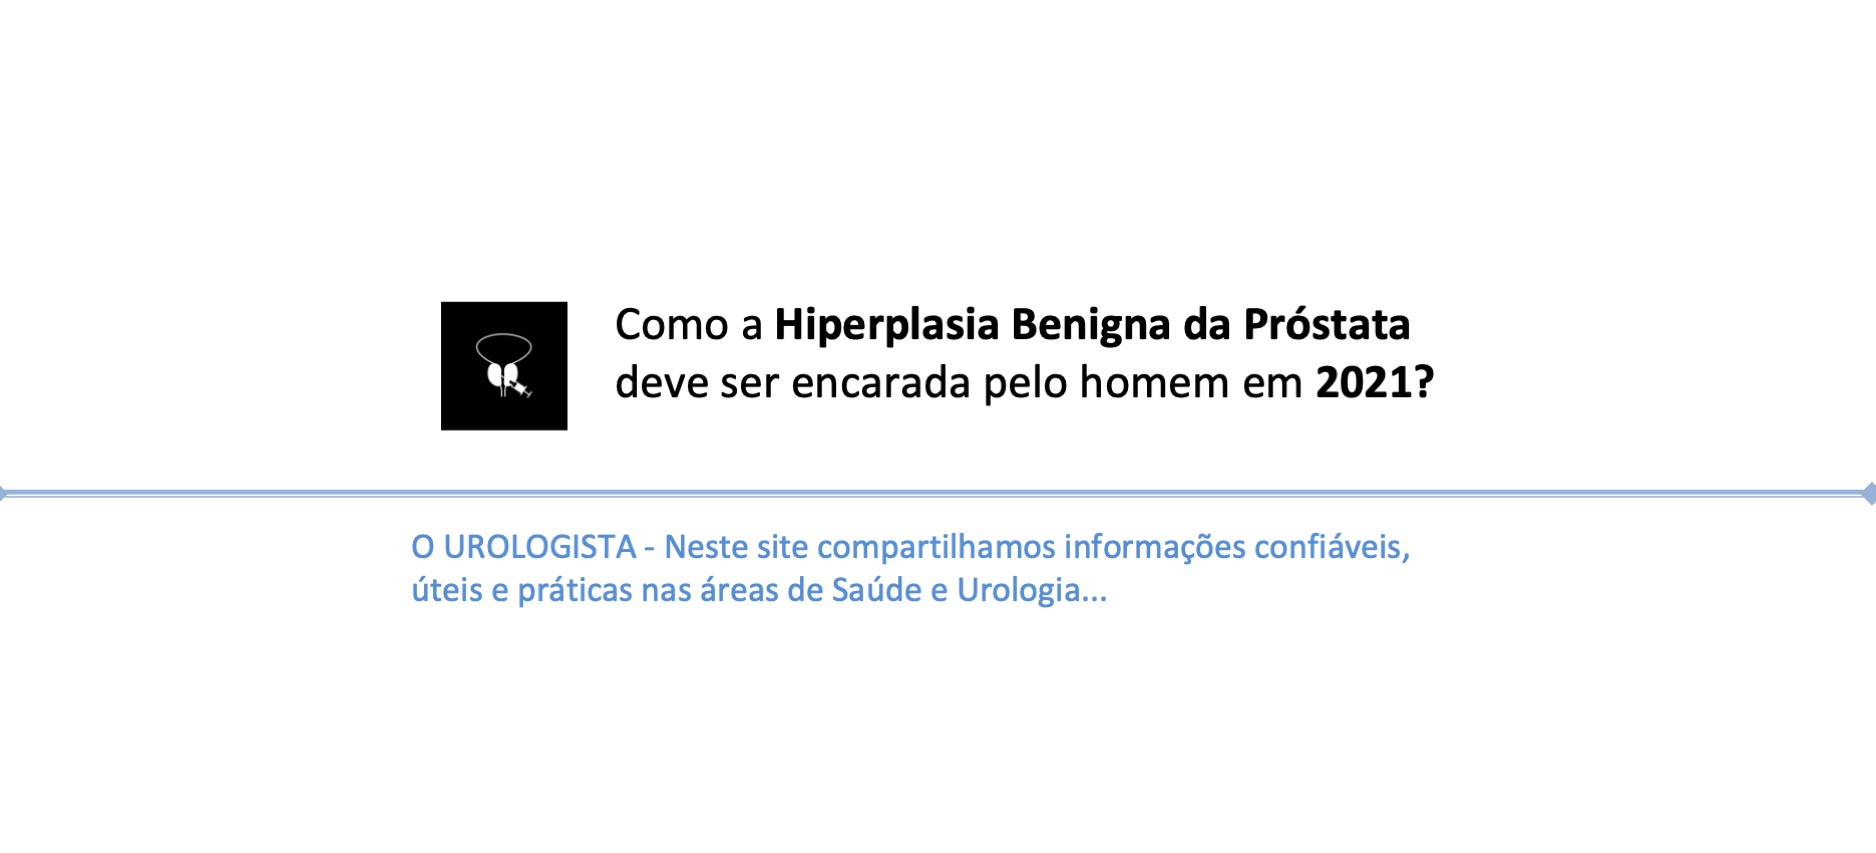 Como a Hiperplasia Benigna da Próstata (HPB) deve ser encarada pelo homem em 2021?